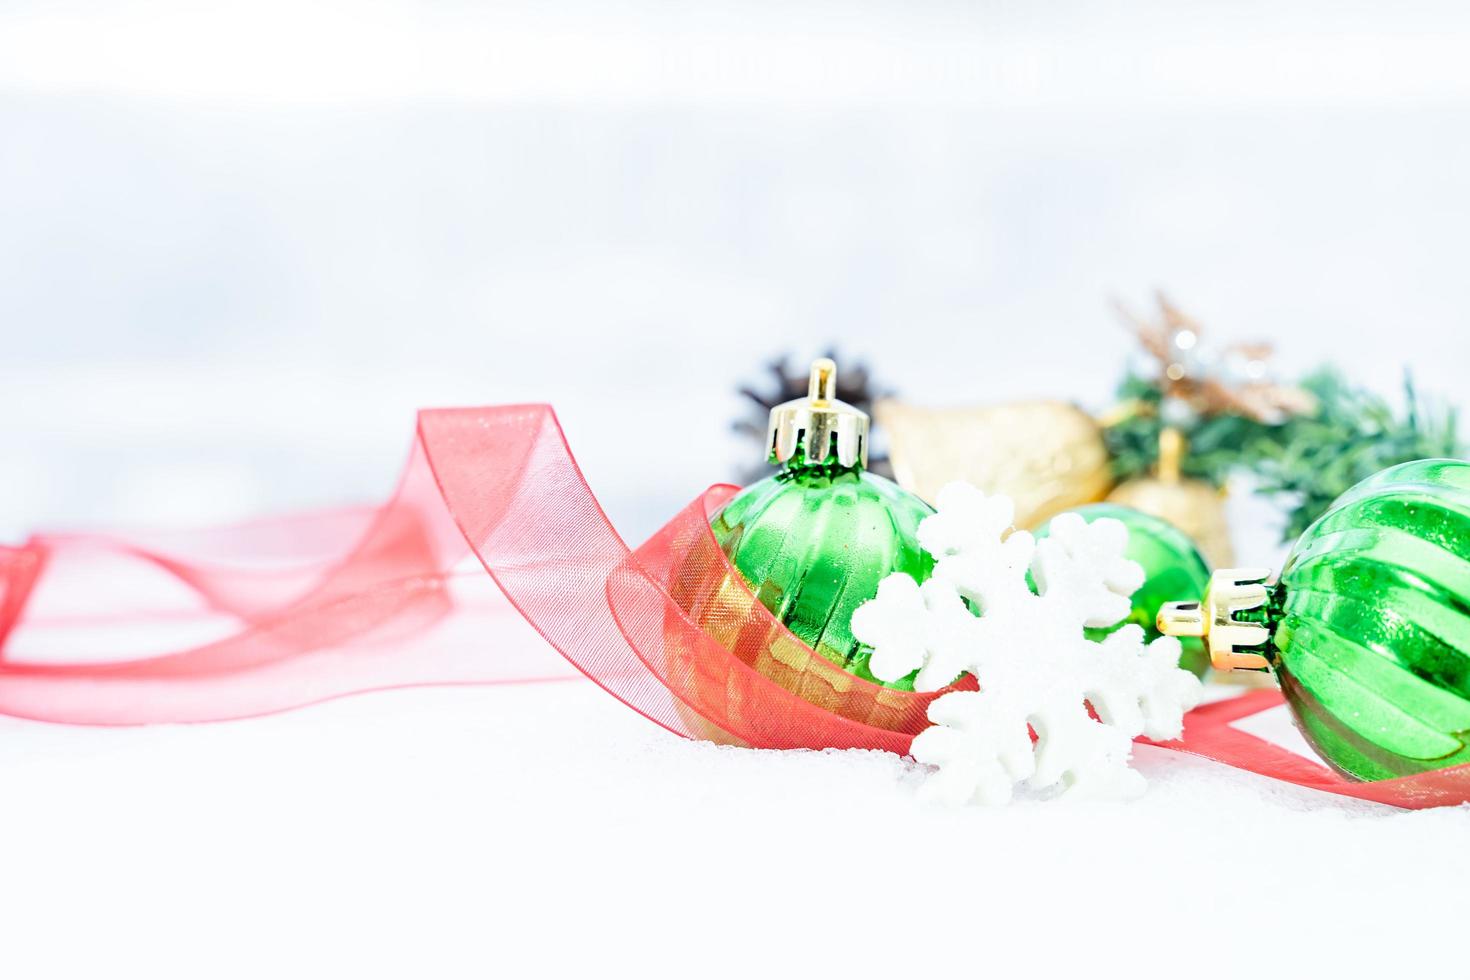 noël d'hiver - boules de noël avec ruban sur la neige, concept de vacances d'hiver. boules vertes de noël, boules dorées, décorations de pins et de flocons de neige sur fond de neige photo